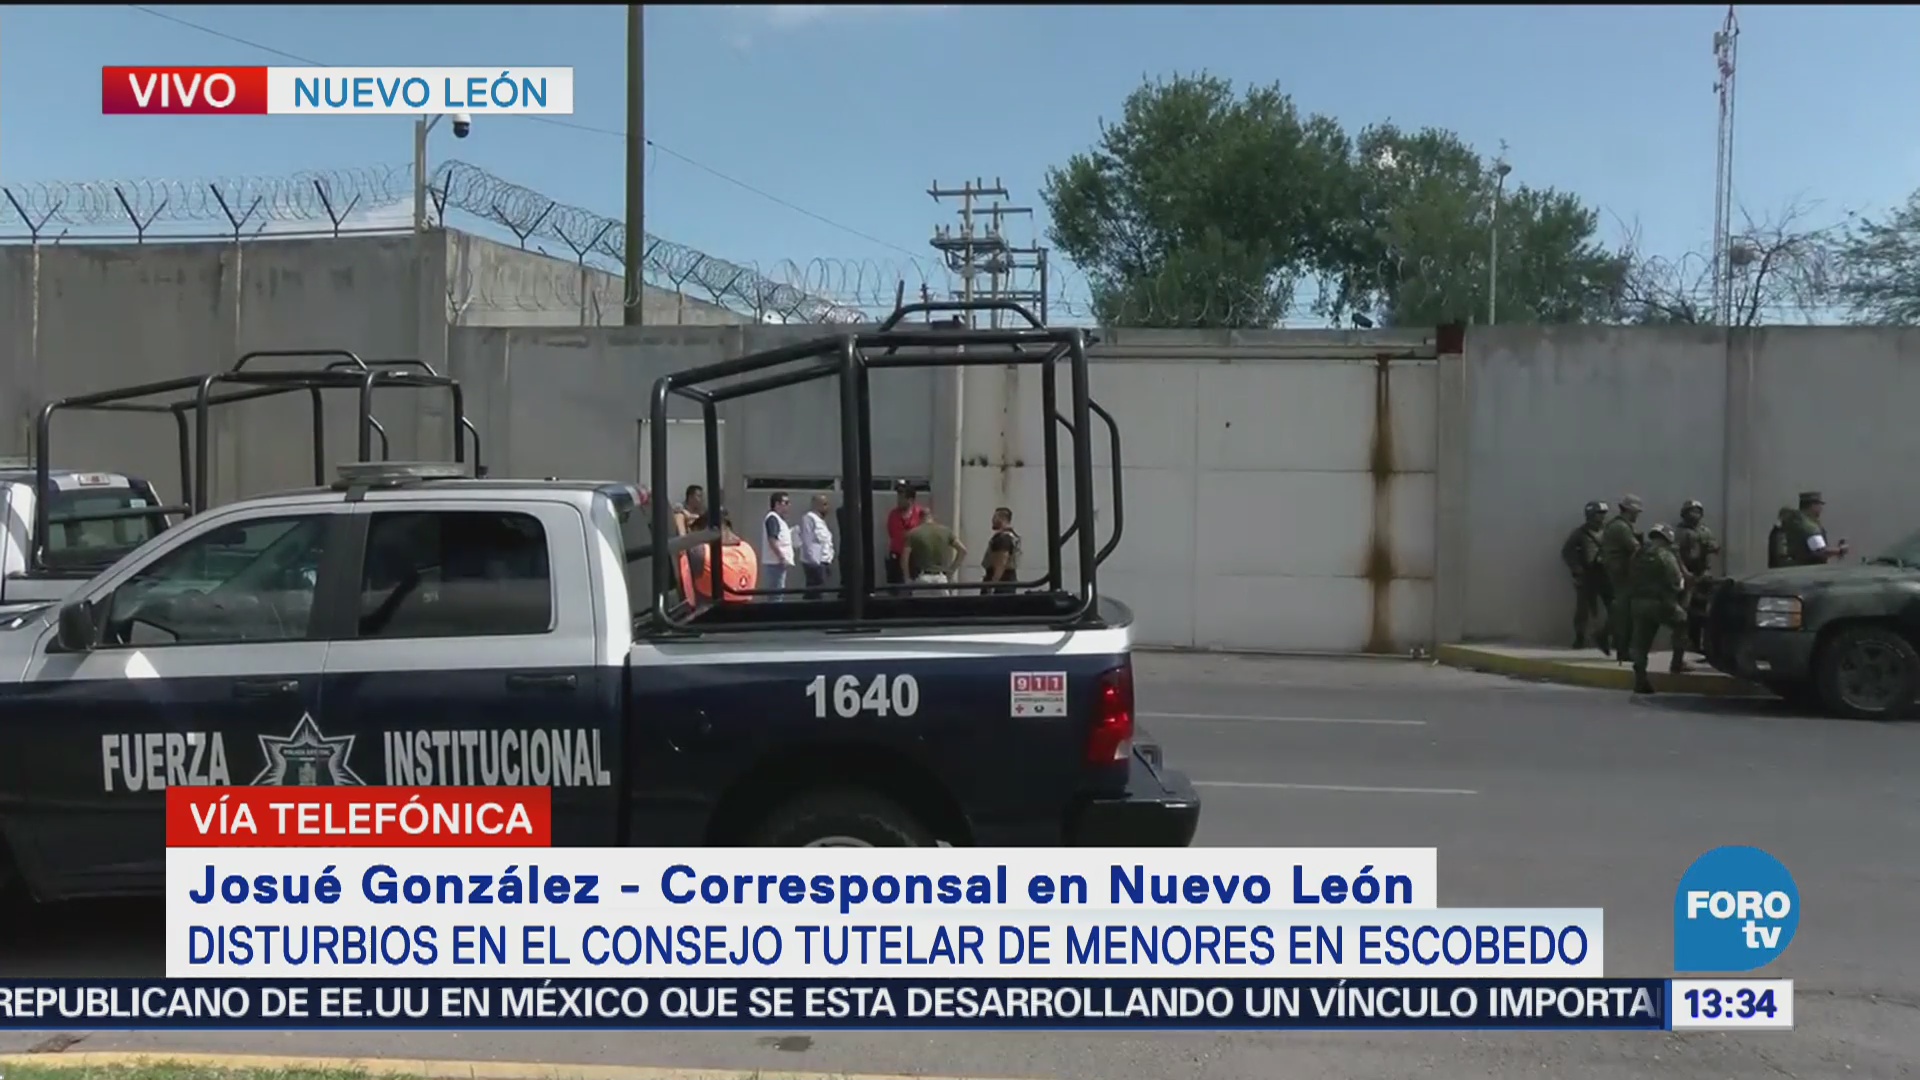 Siguen disturbios dentro del tutelar de menores en Escobedo, Nuevo León